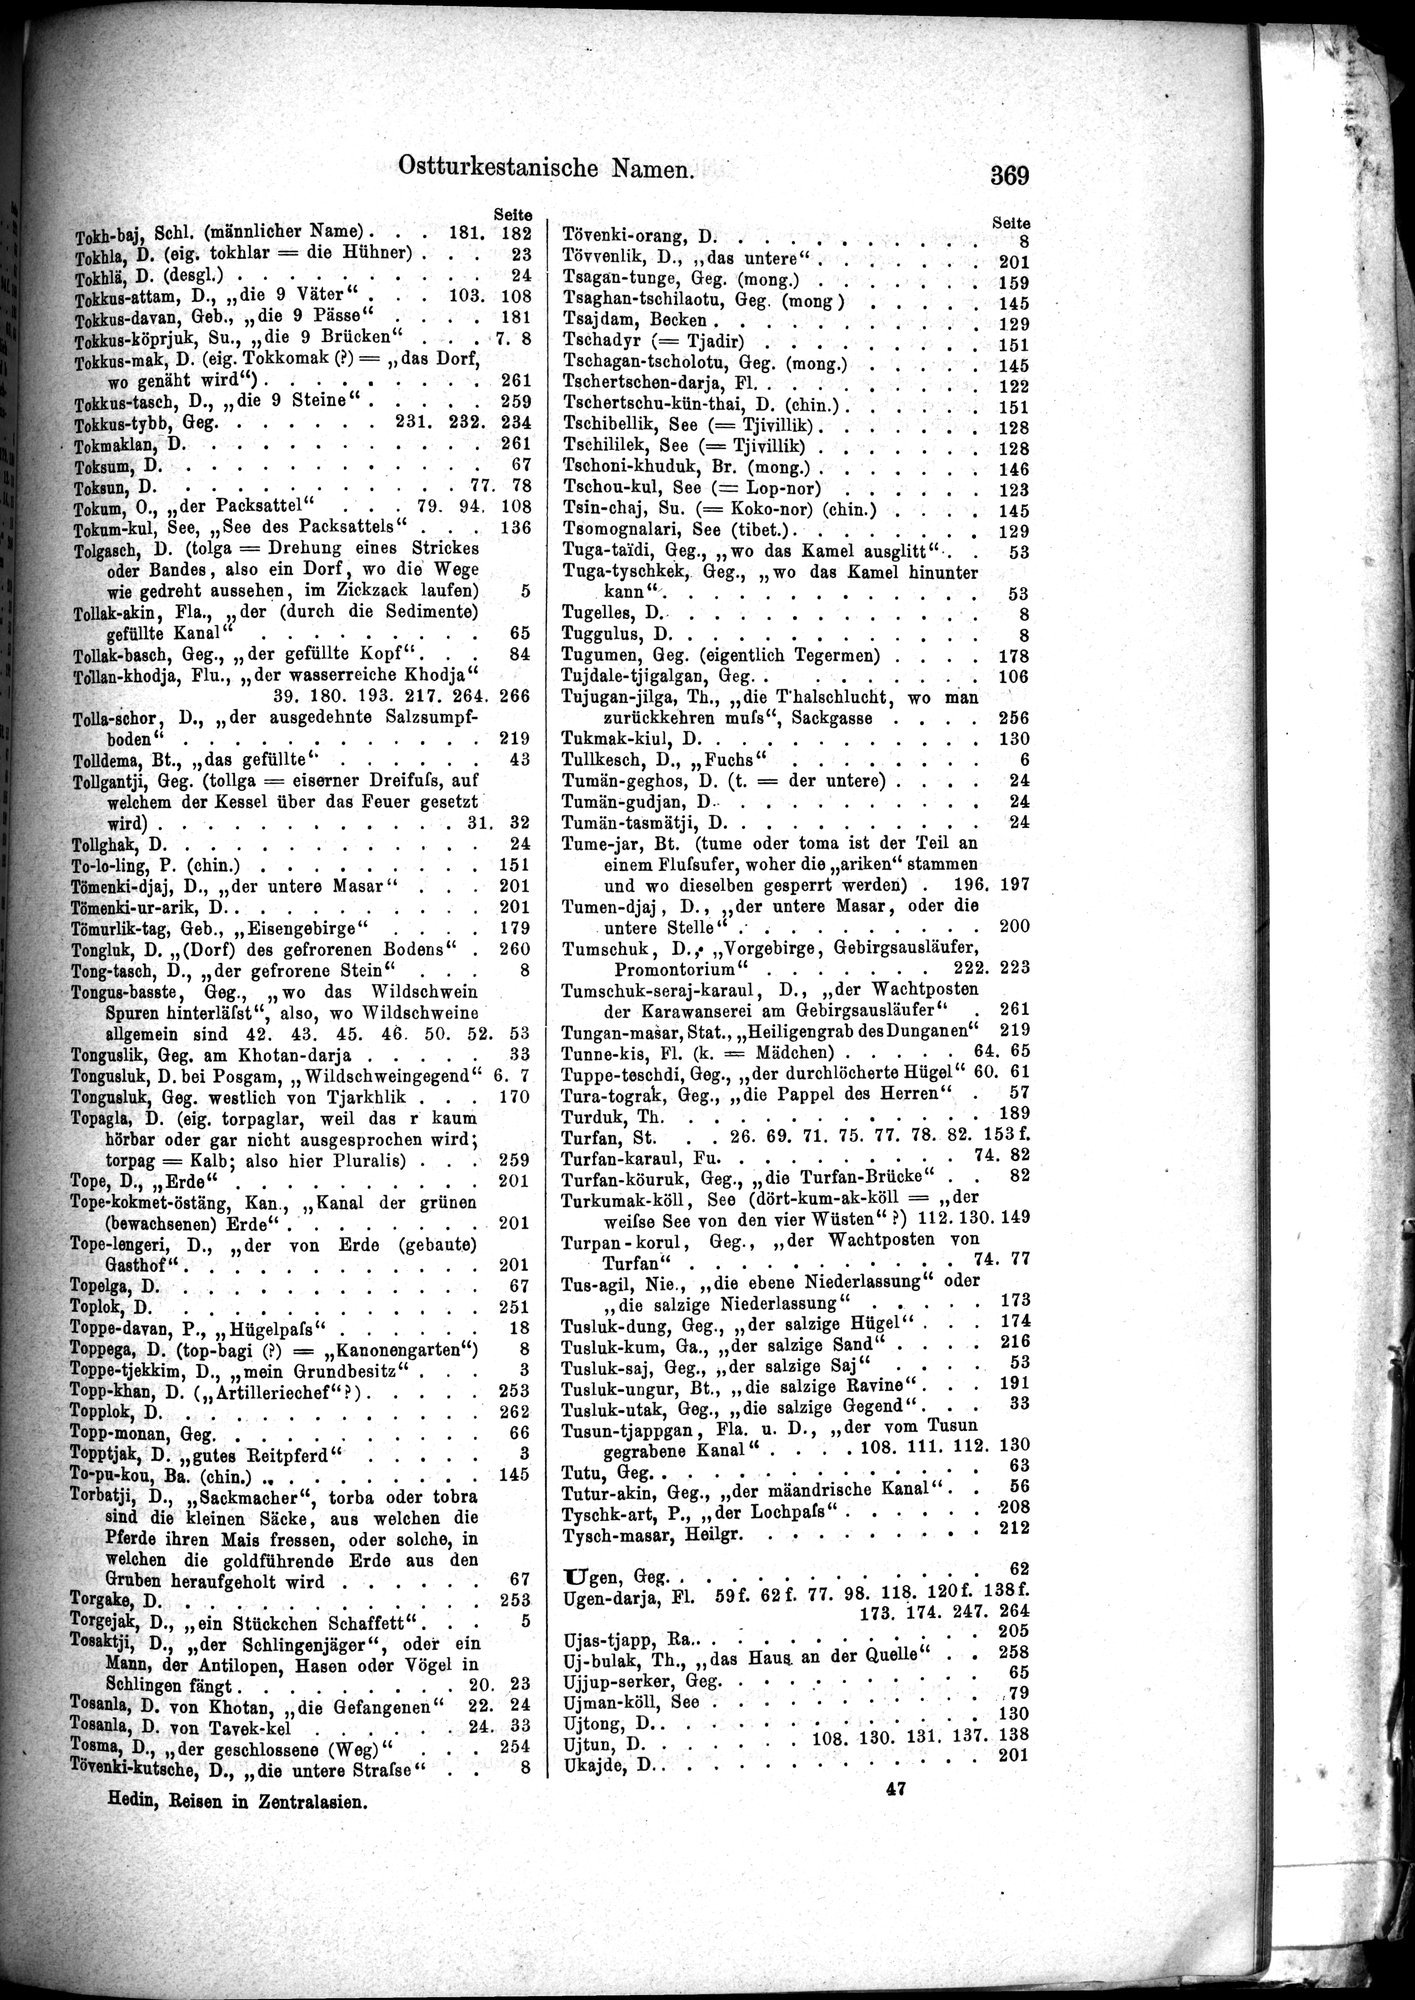 Die Geographische-Wissenschaftlichen Ergebnisse meiner Reisen in Zentralasien, 1894-1897 : vol.1 / Page 381 (Grayscale High Resolution Image)